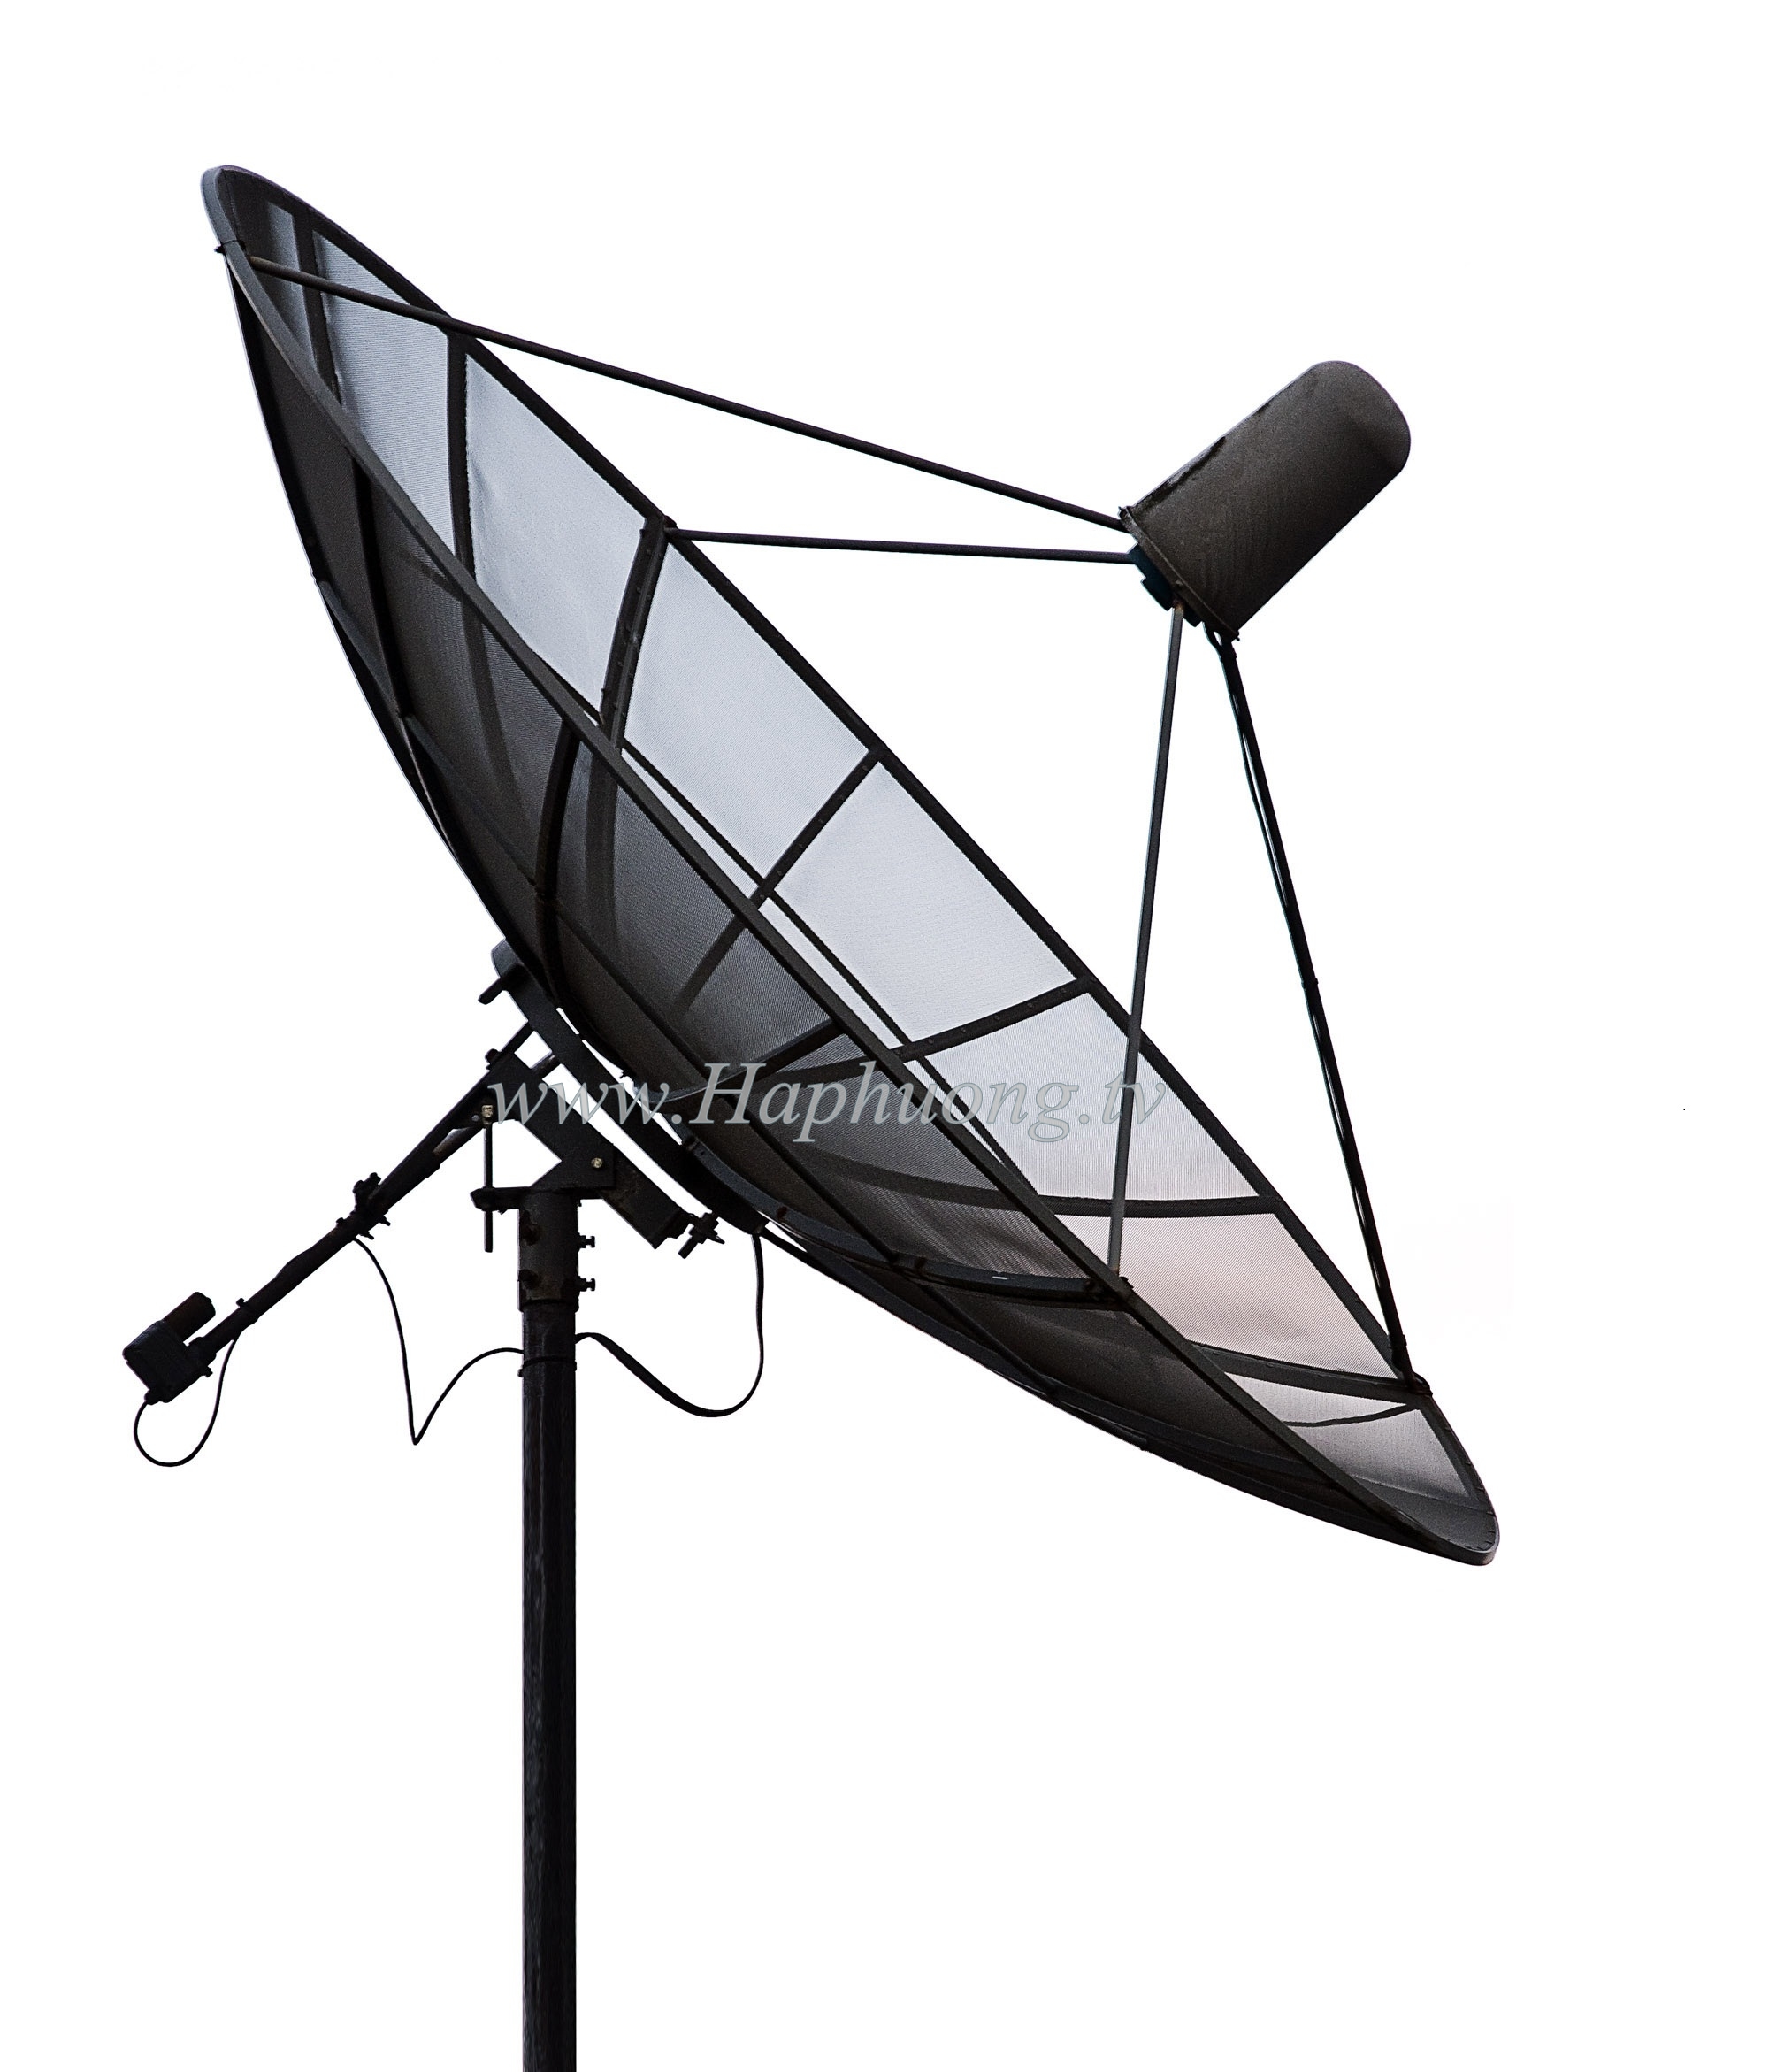 Anten Parabol Comstar 3m - ST 10